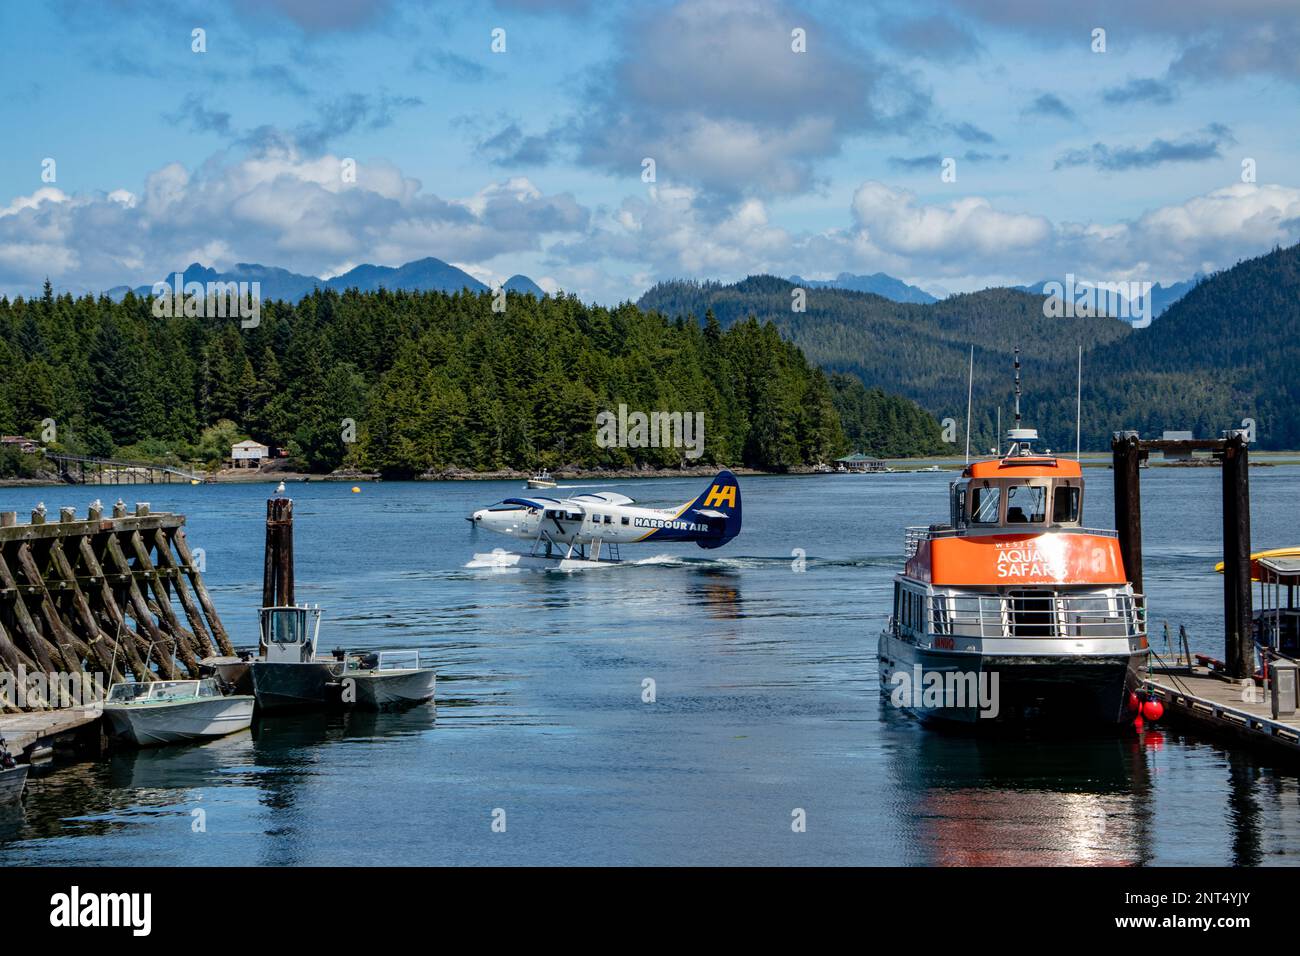 Aereo da mare che cerca di decollare dalla marina - Tofino, Vancouver Island, BC, Canada Foto Stock